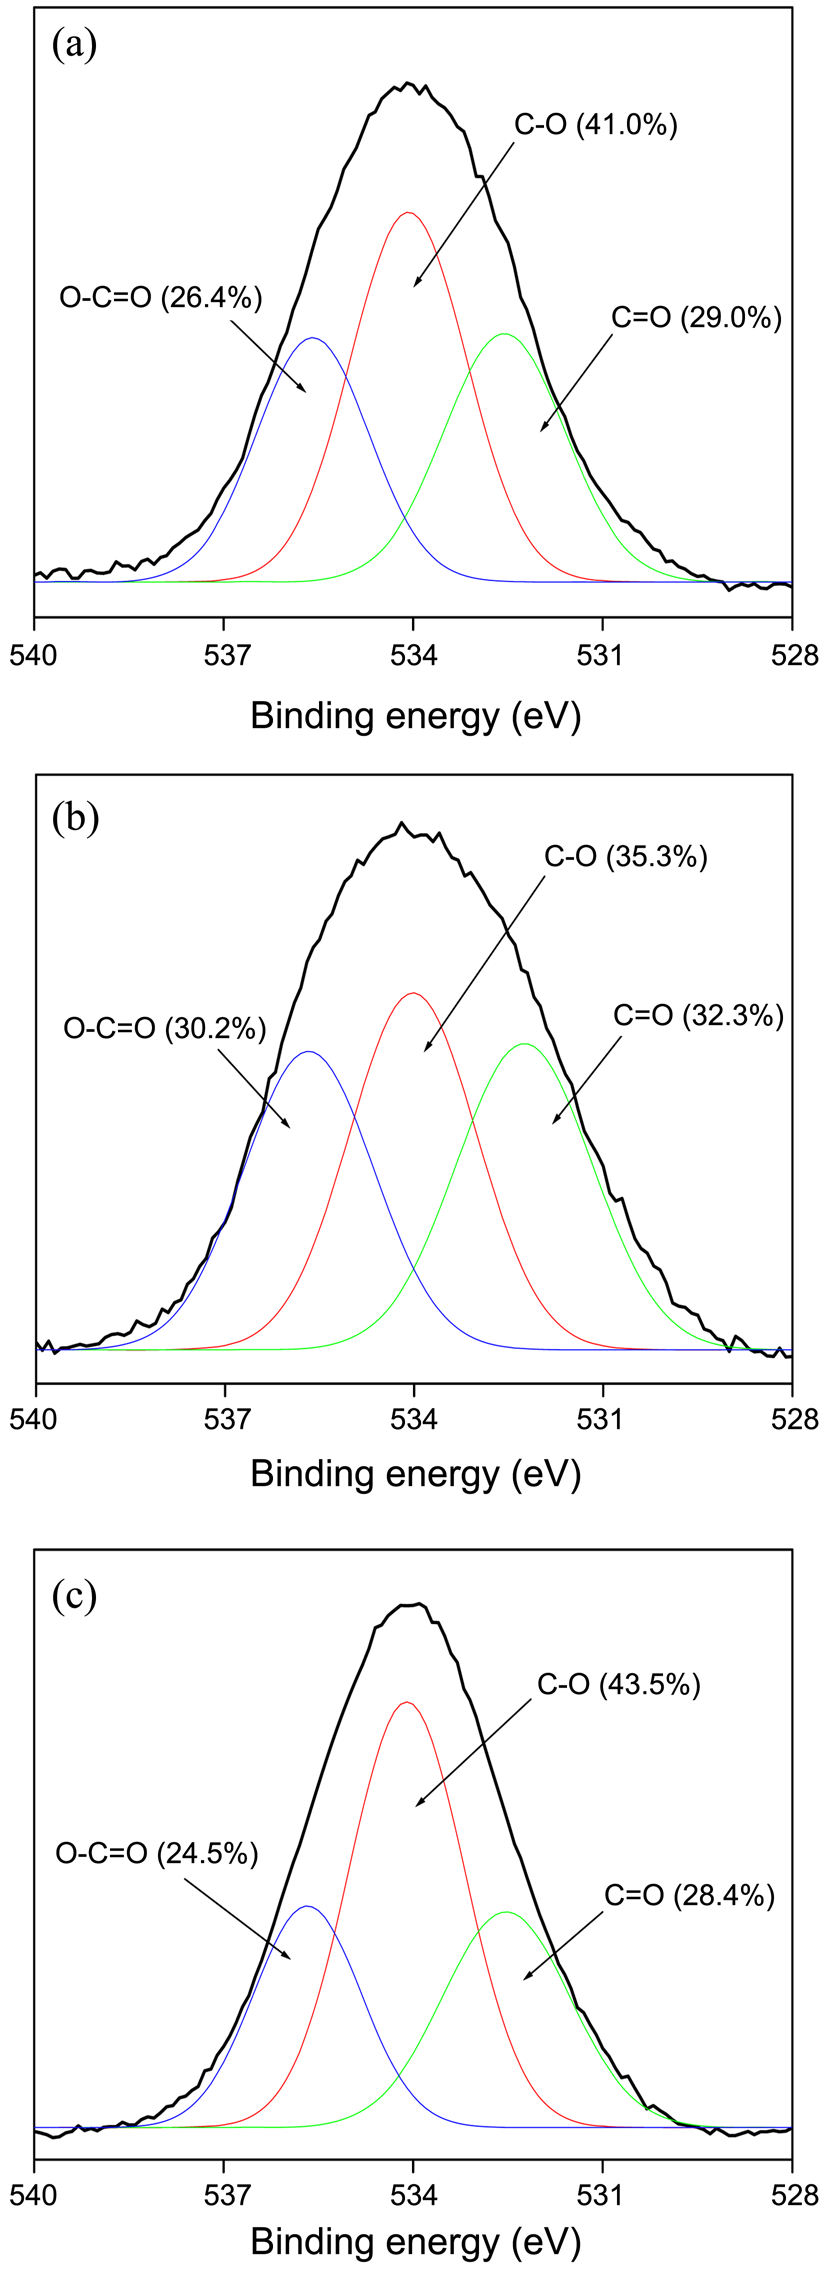 그림 57. 활성탄소 및 산성용액, 염기성용액으로 표면처리한 활성탄소의 고분해능 O1s 스펙트럼